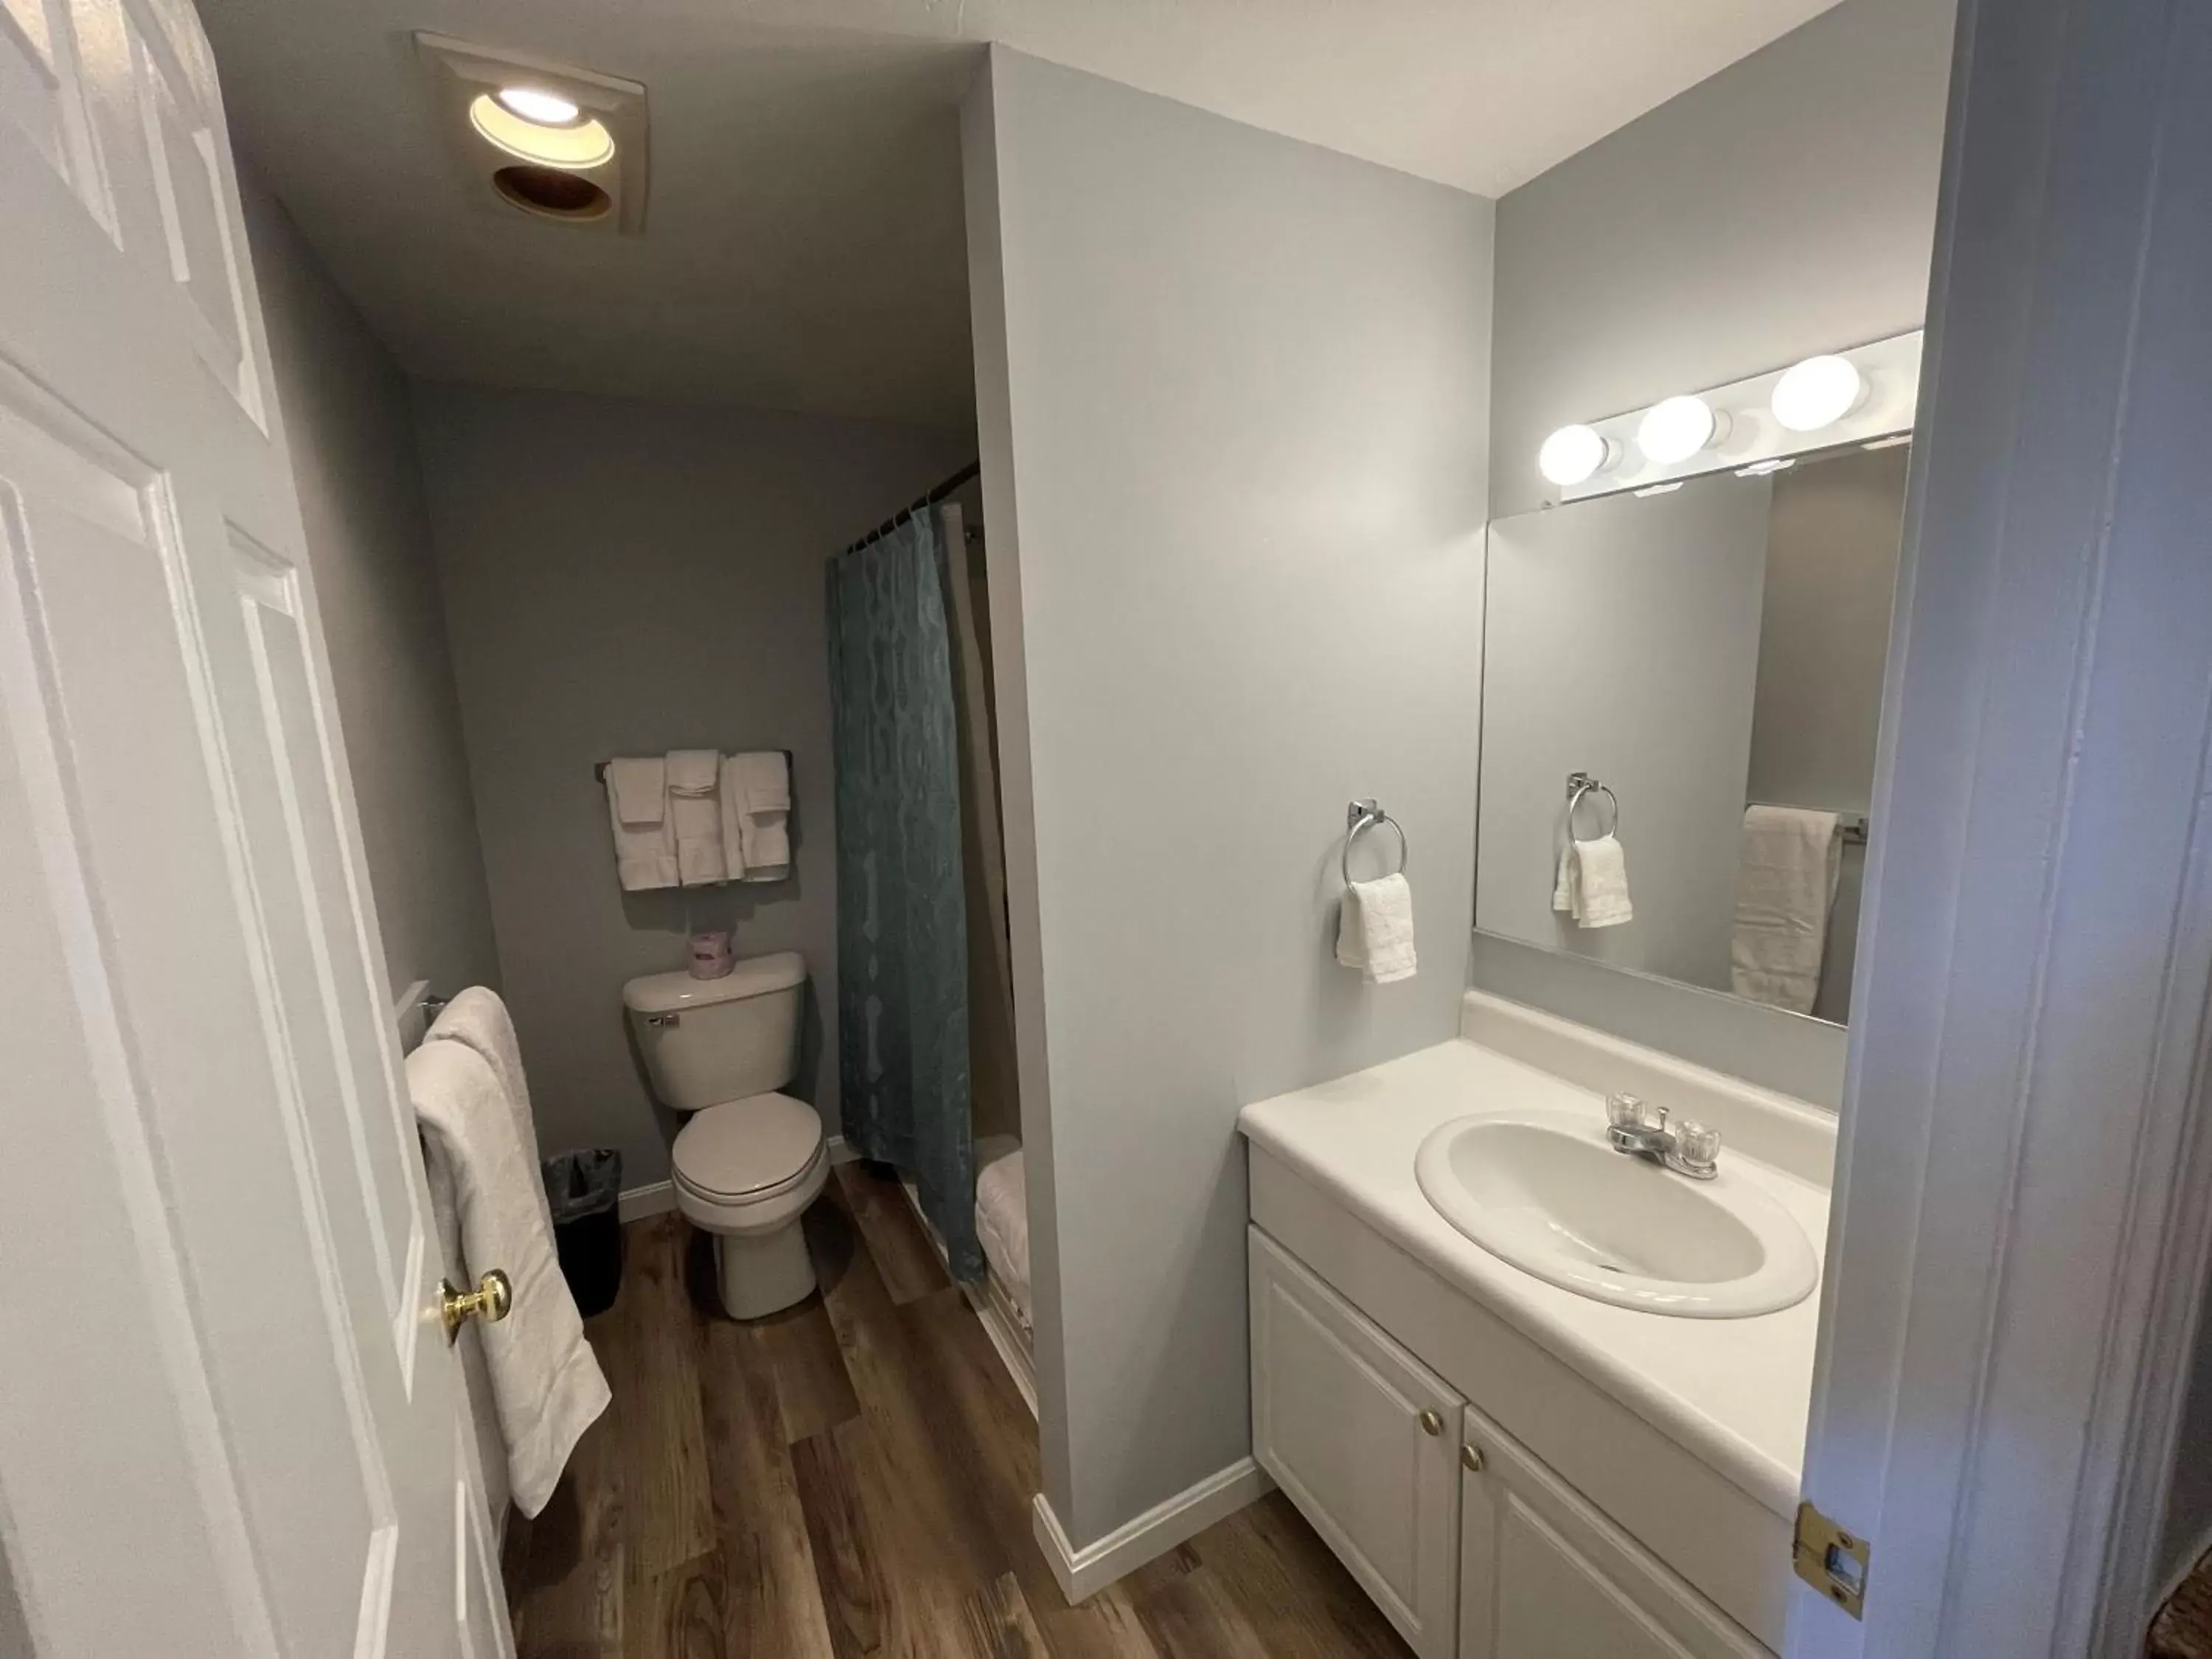 Bathroom in Misty Harbor Resort